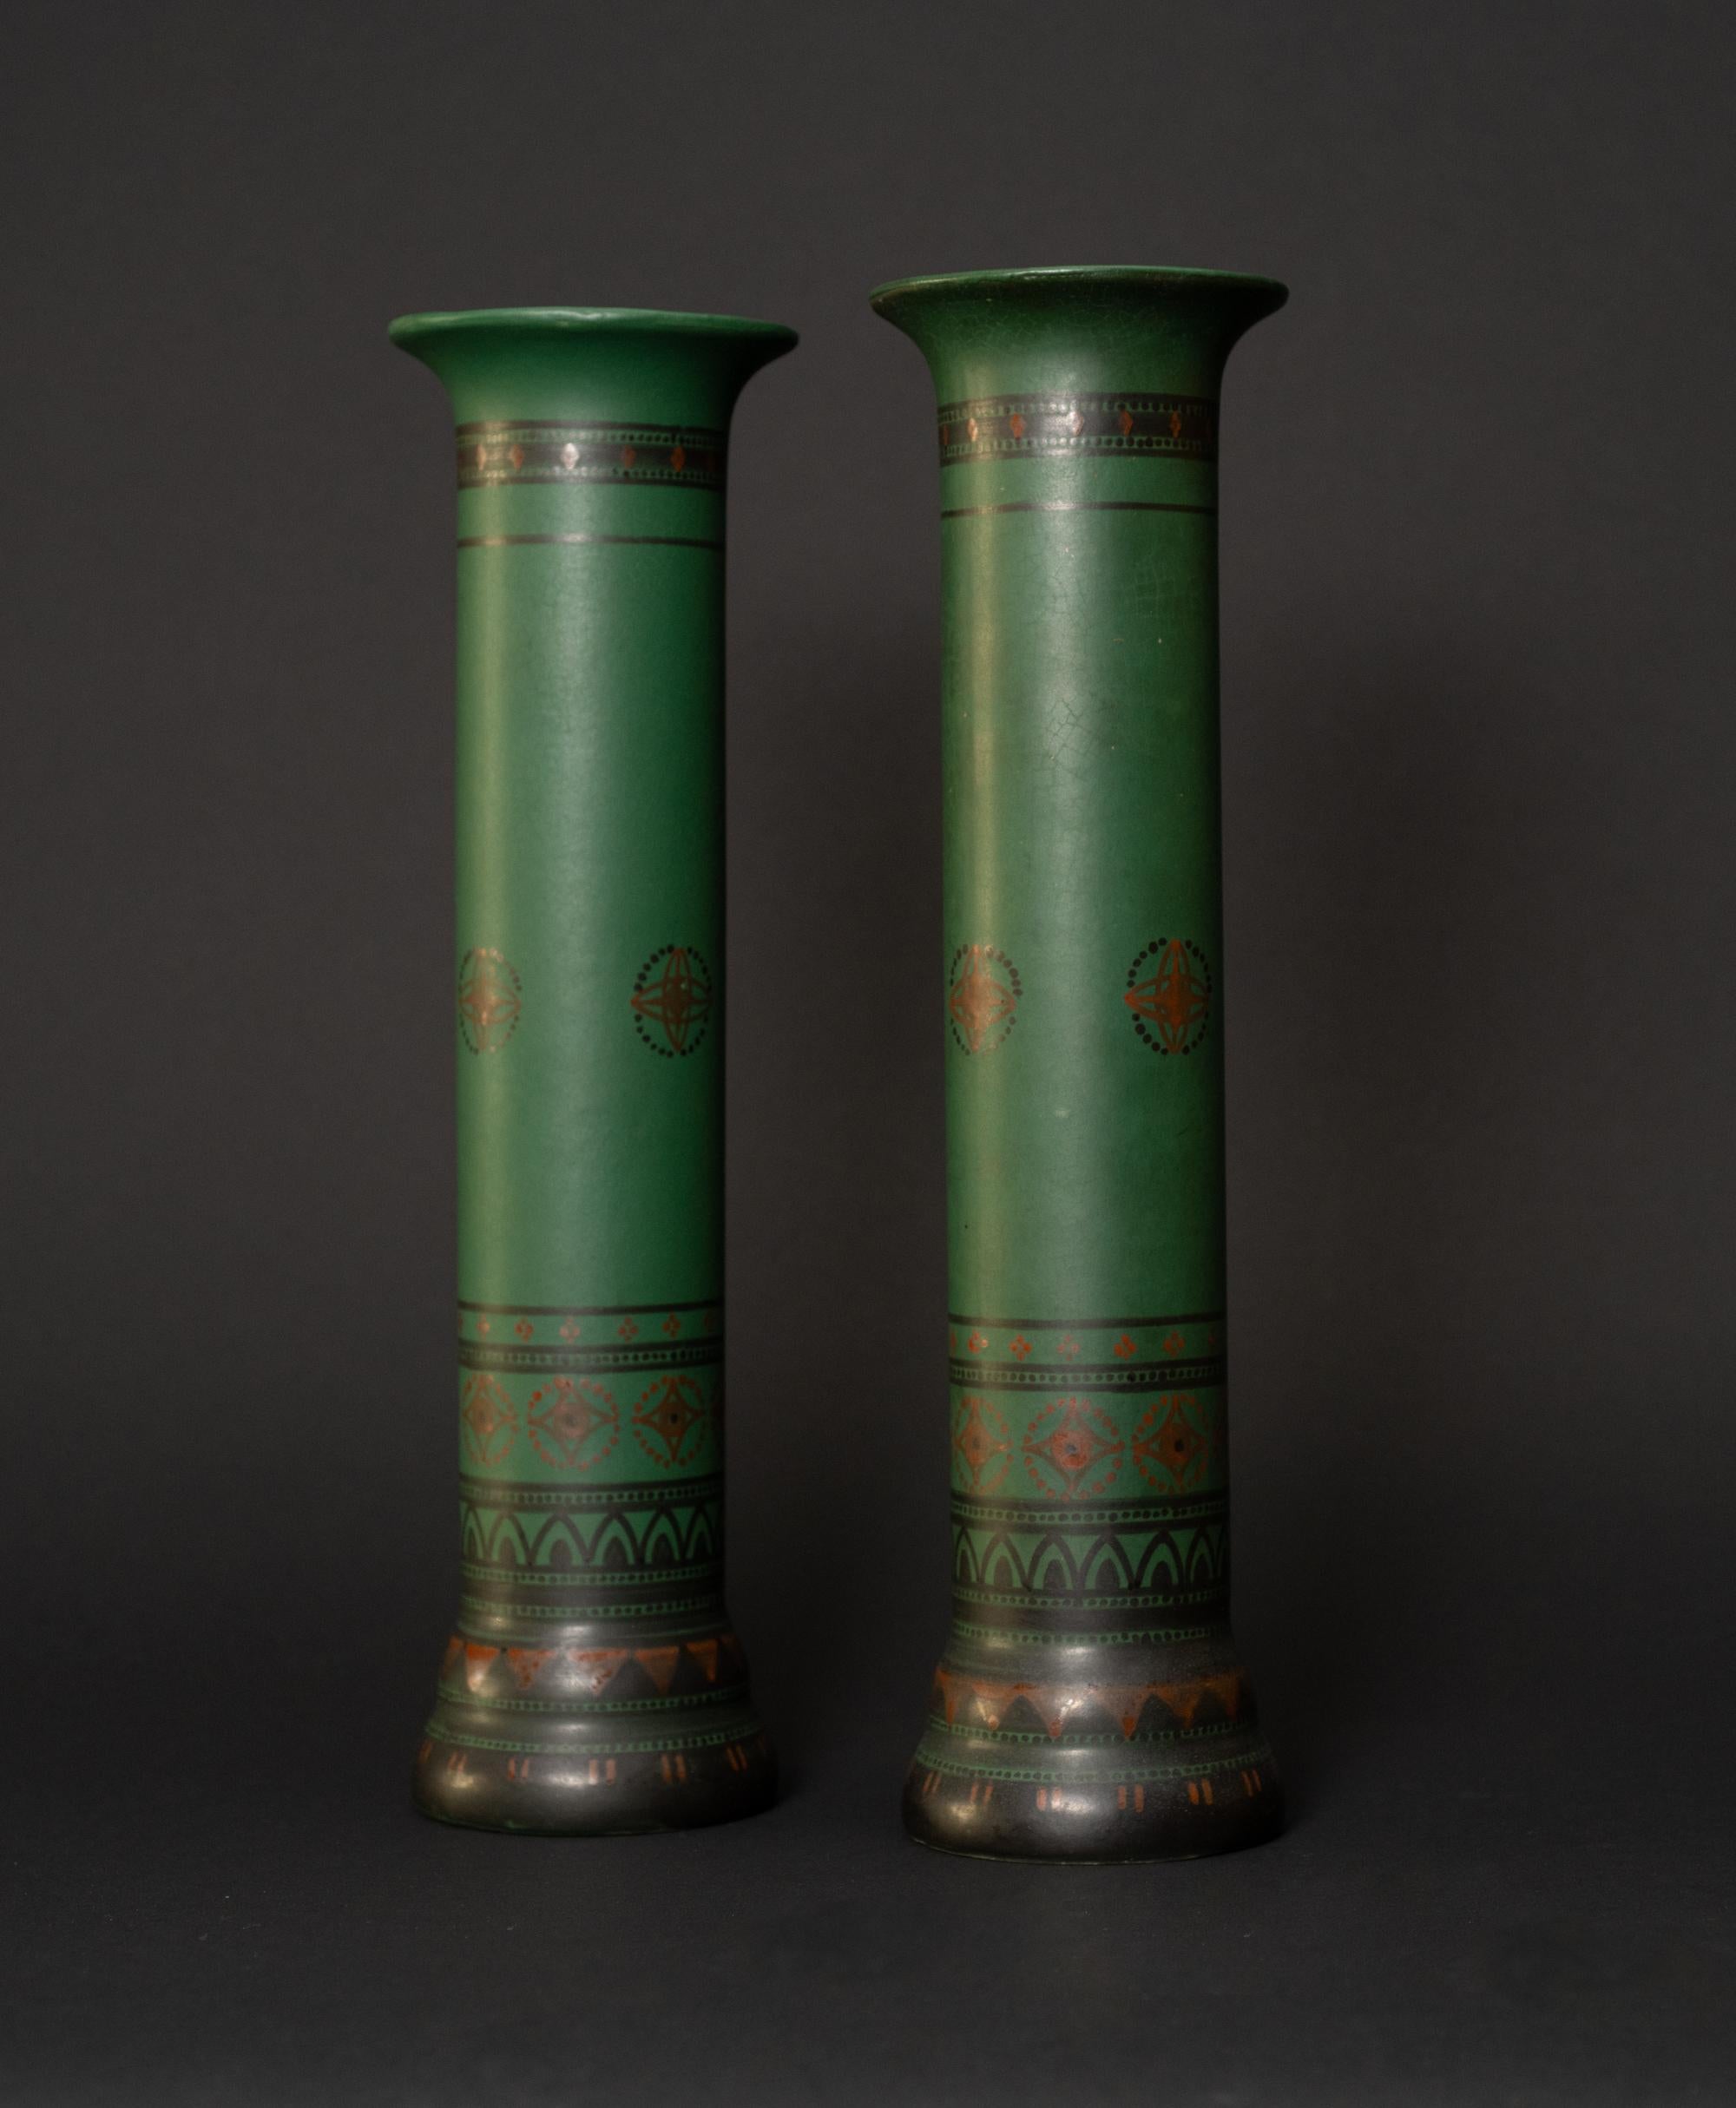 
Die Böden dieser grünen Säulenvasen sind schwarz lackiert und enthalten verschiedene geometrische Muster, die sich am Schaft der Vase hocharbeiten und schließlich weniger konzentriert werden. Die Entwürfe sind in Schwarz, Rot und Gold gehalten und